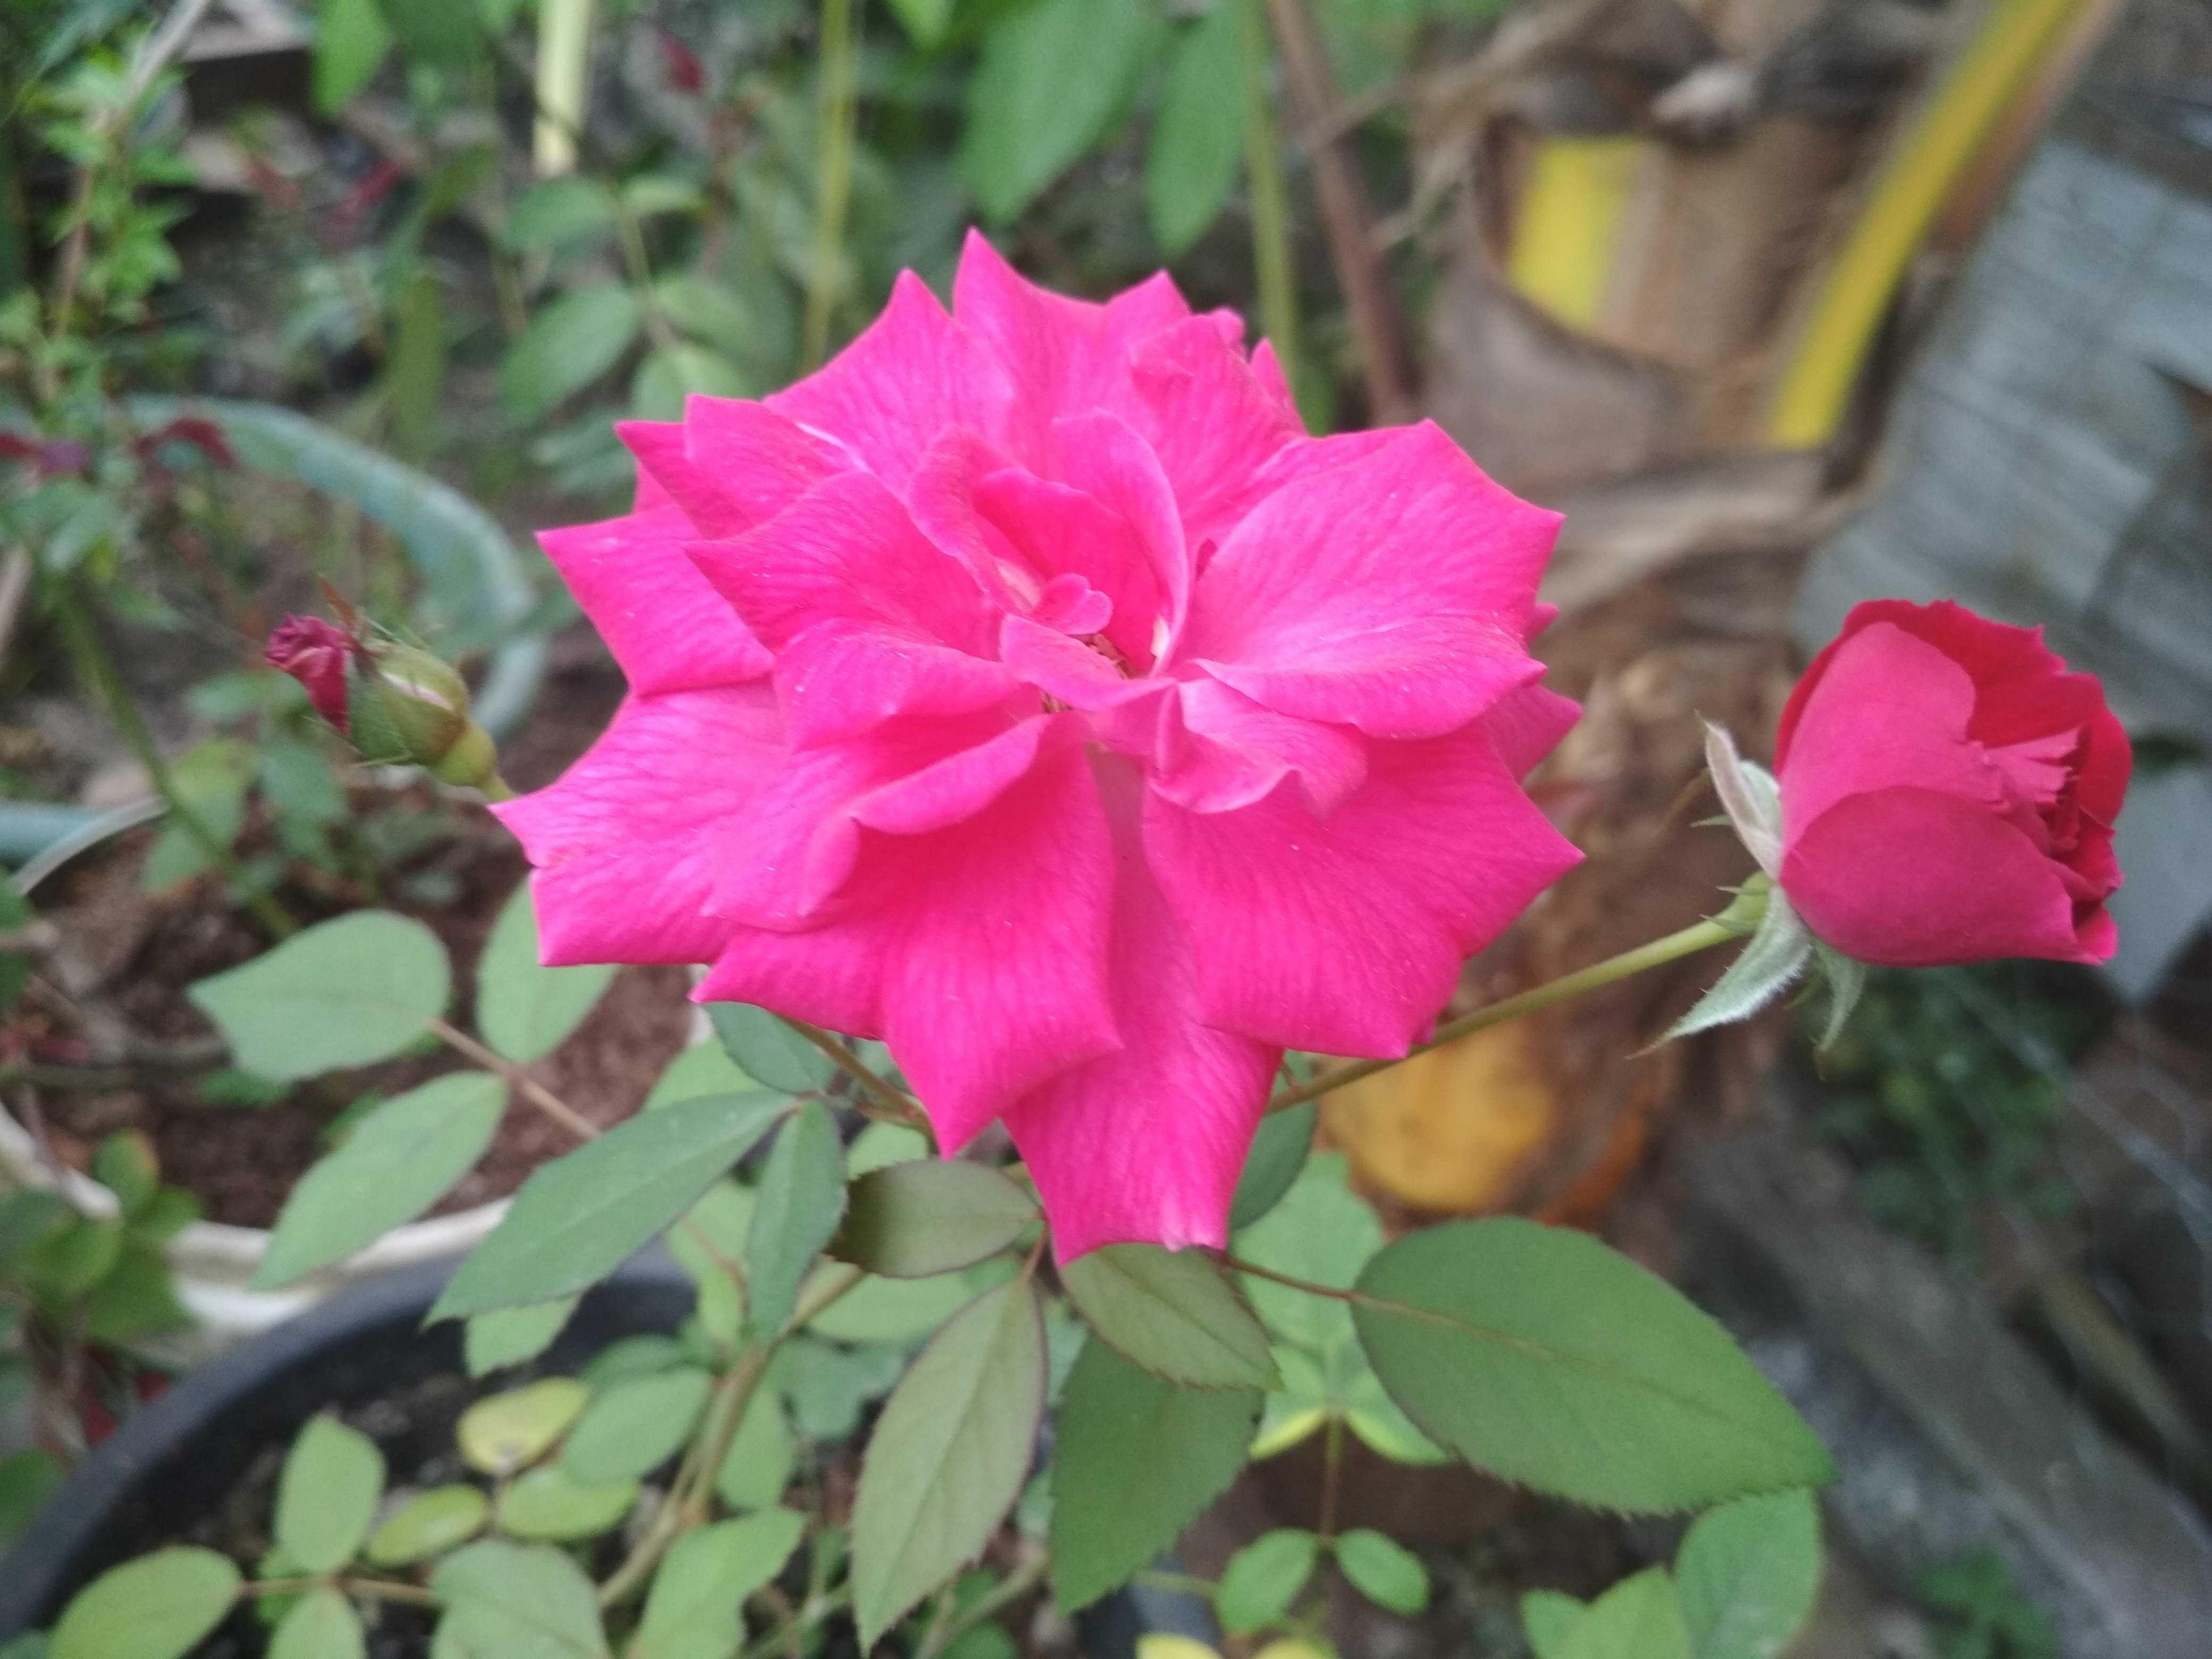  Paling  Bagus 28 Gambar  Bunga  Mawar  Pink Yang  Indah  